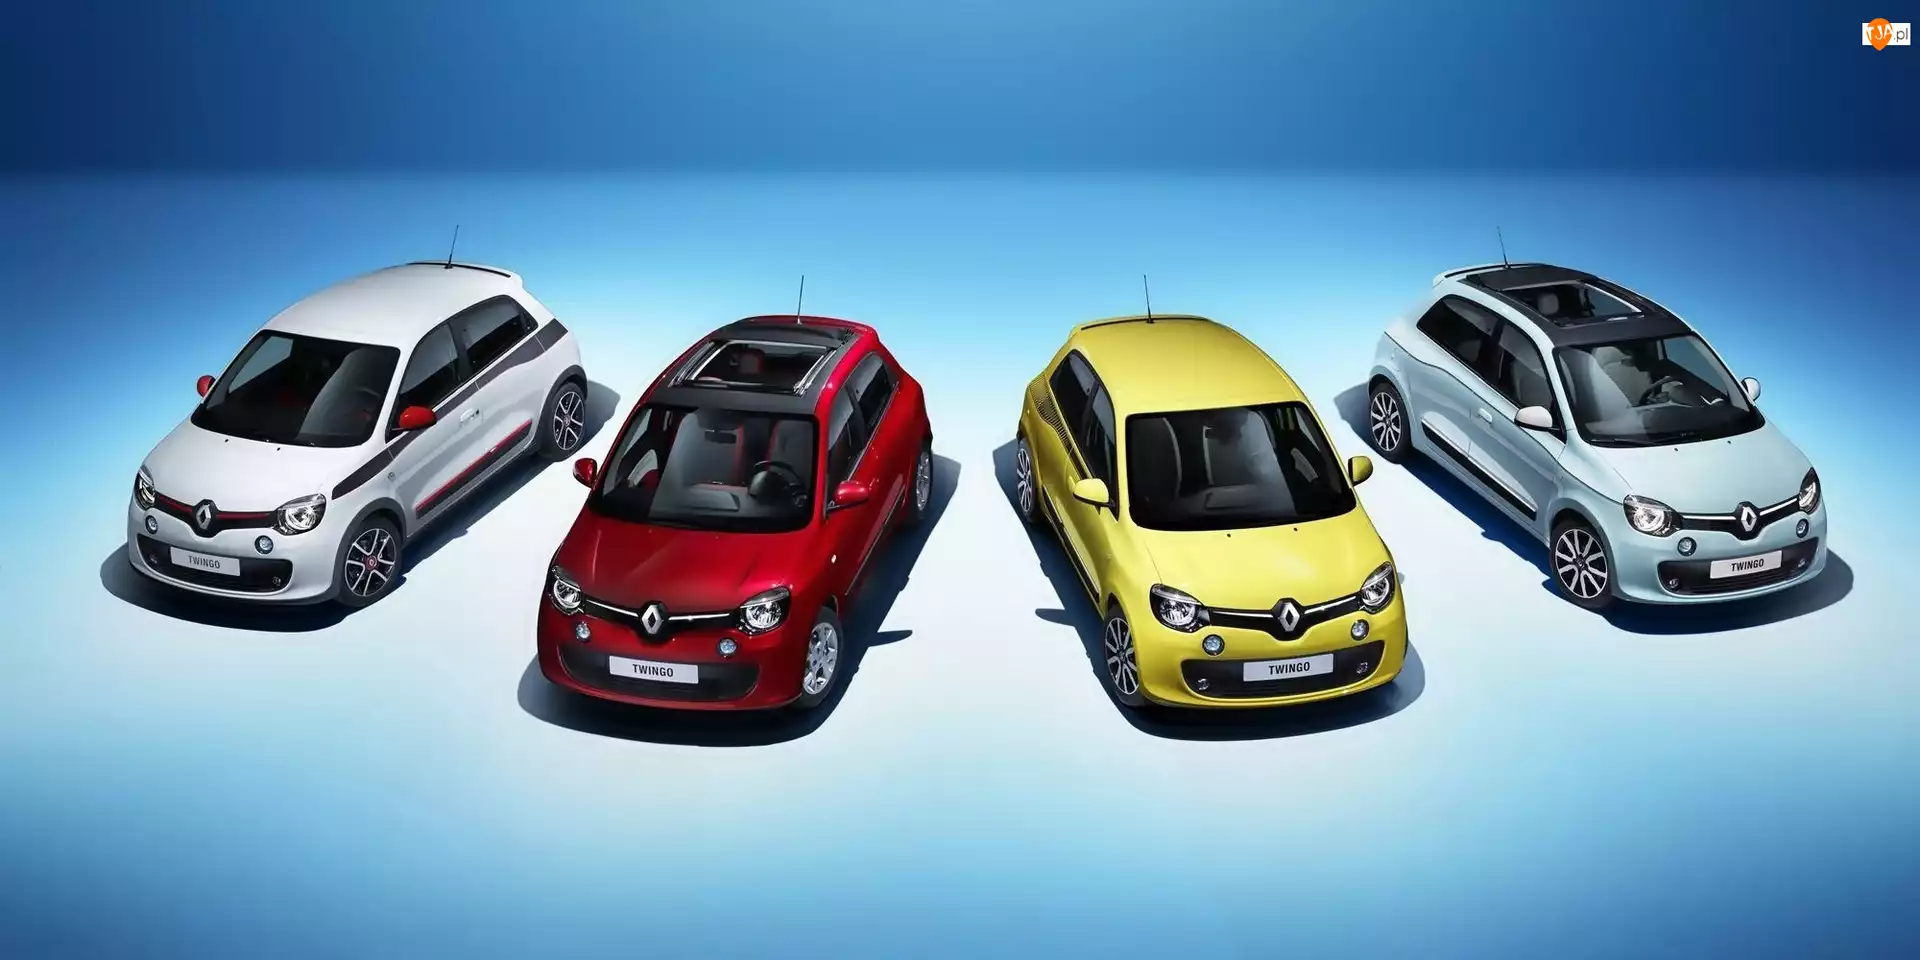 Twingo, Renault